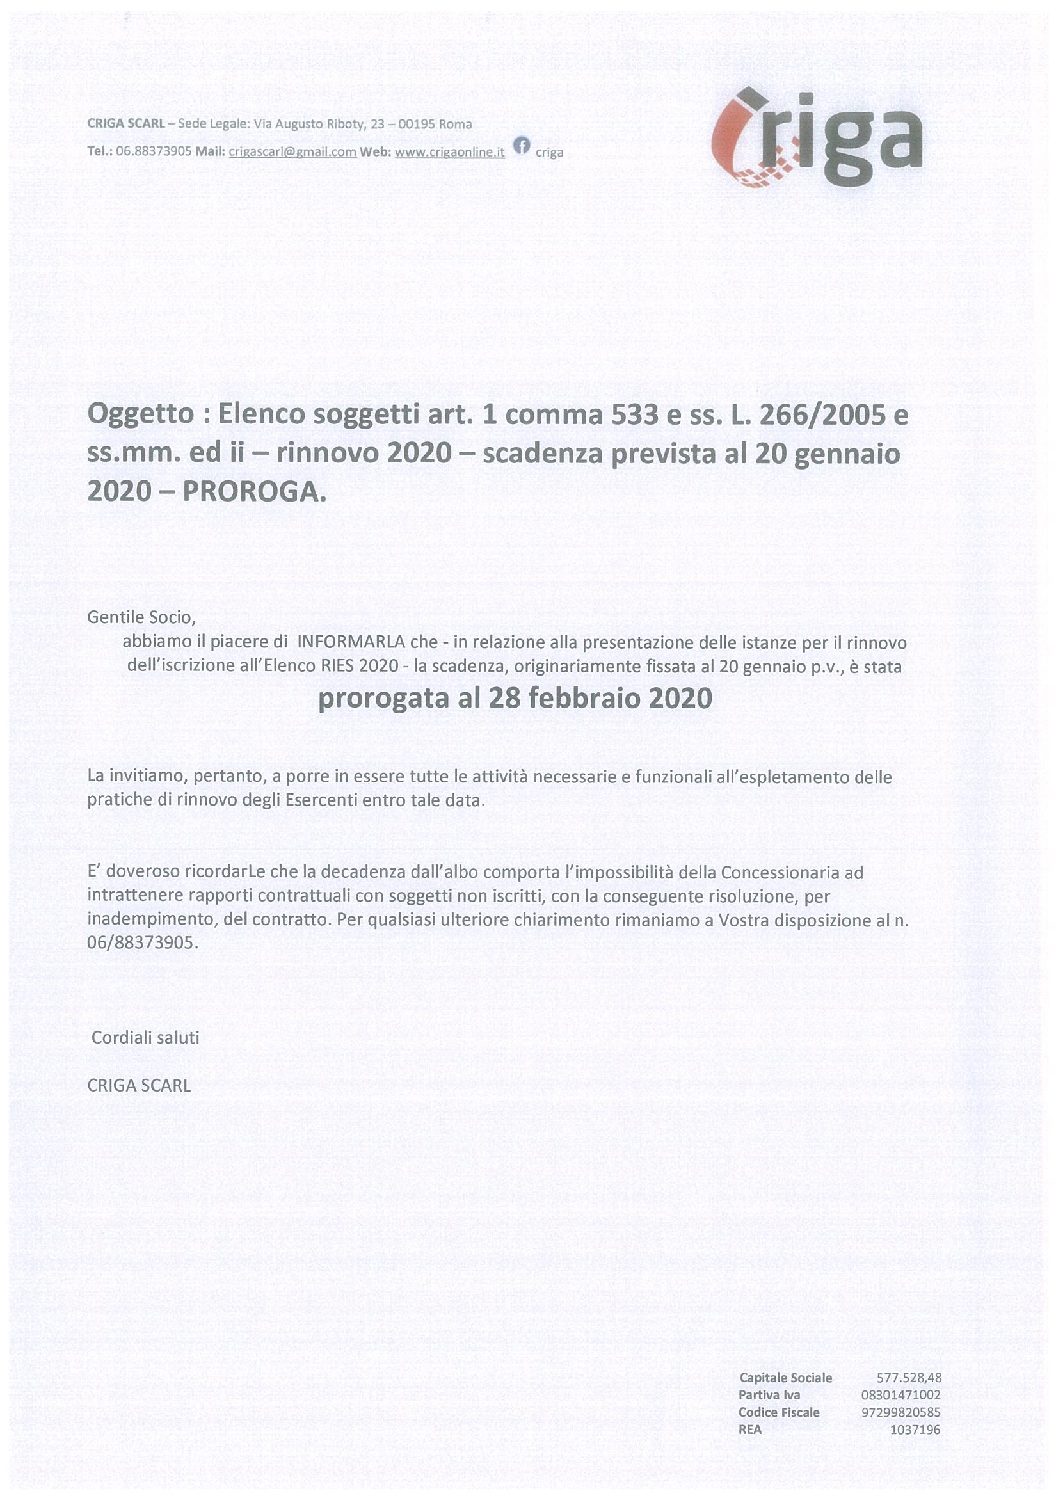 Oggetto : Elenco soggetti art. 1 comma 533 e ss. L. 266/2005 e ss.mm. ed ii – rinnovo 2020 – scadenza prevista al 20 gennaio 2020 – PROROGA.